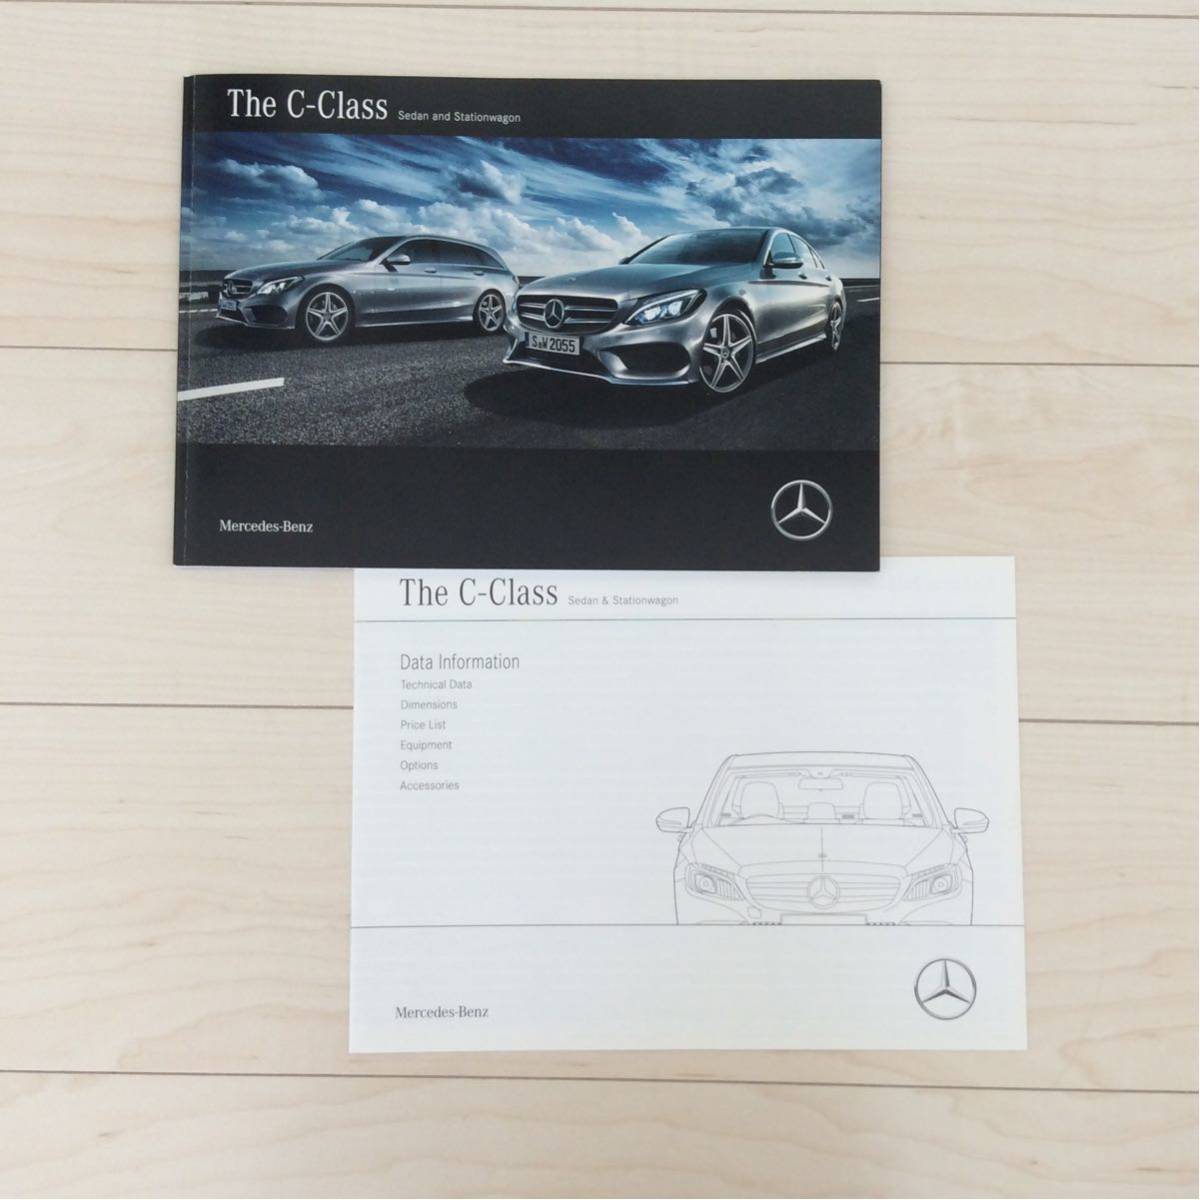 【Mercedes-Benz】メルセデス・ベンツ ★☆ C-Class ・2017年7月・セダン/ステーションワゴン・カタログ・パンフレット★☆_画像1